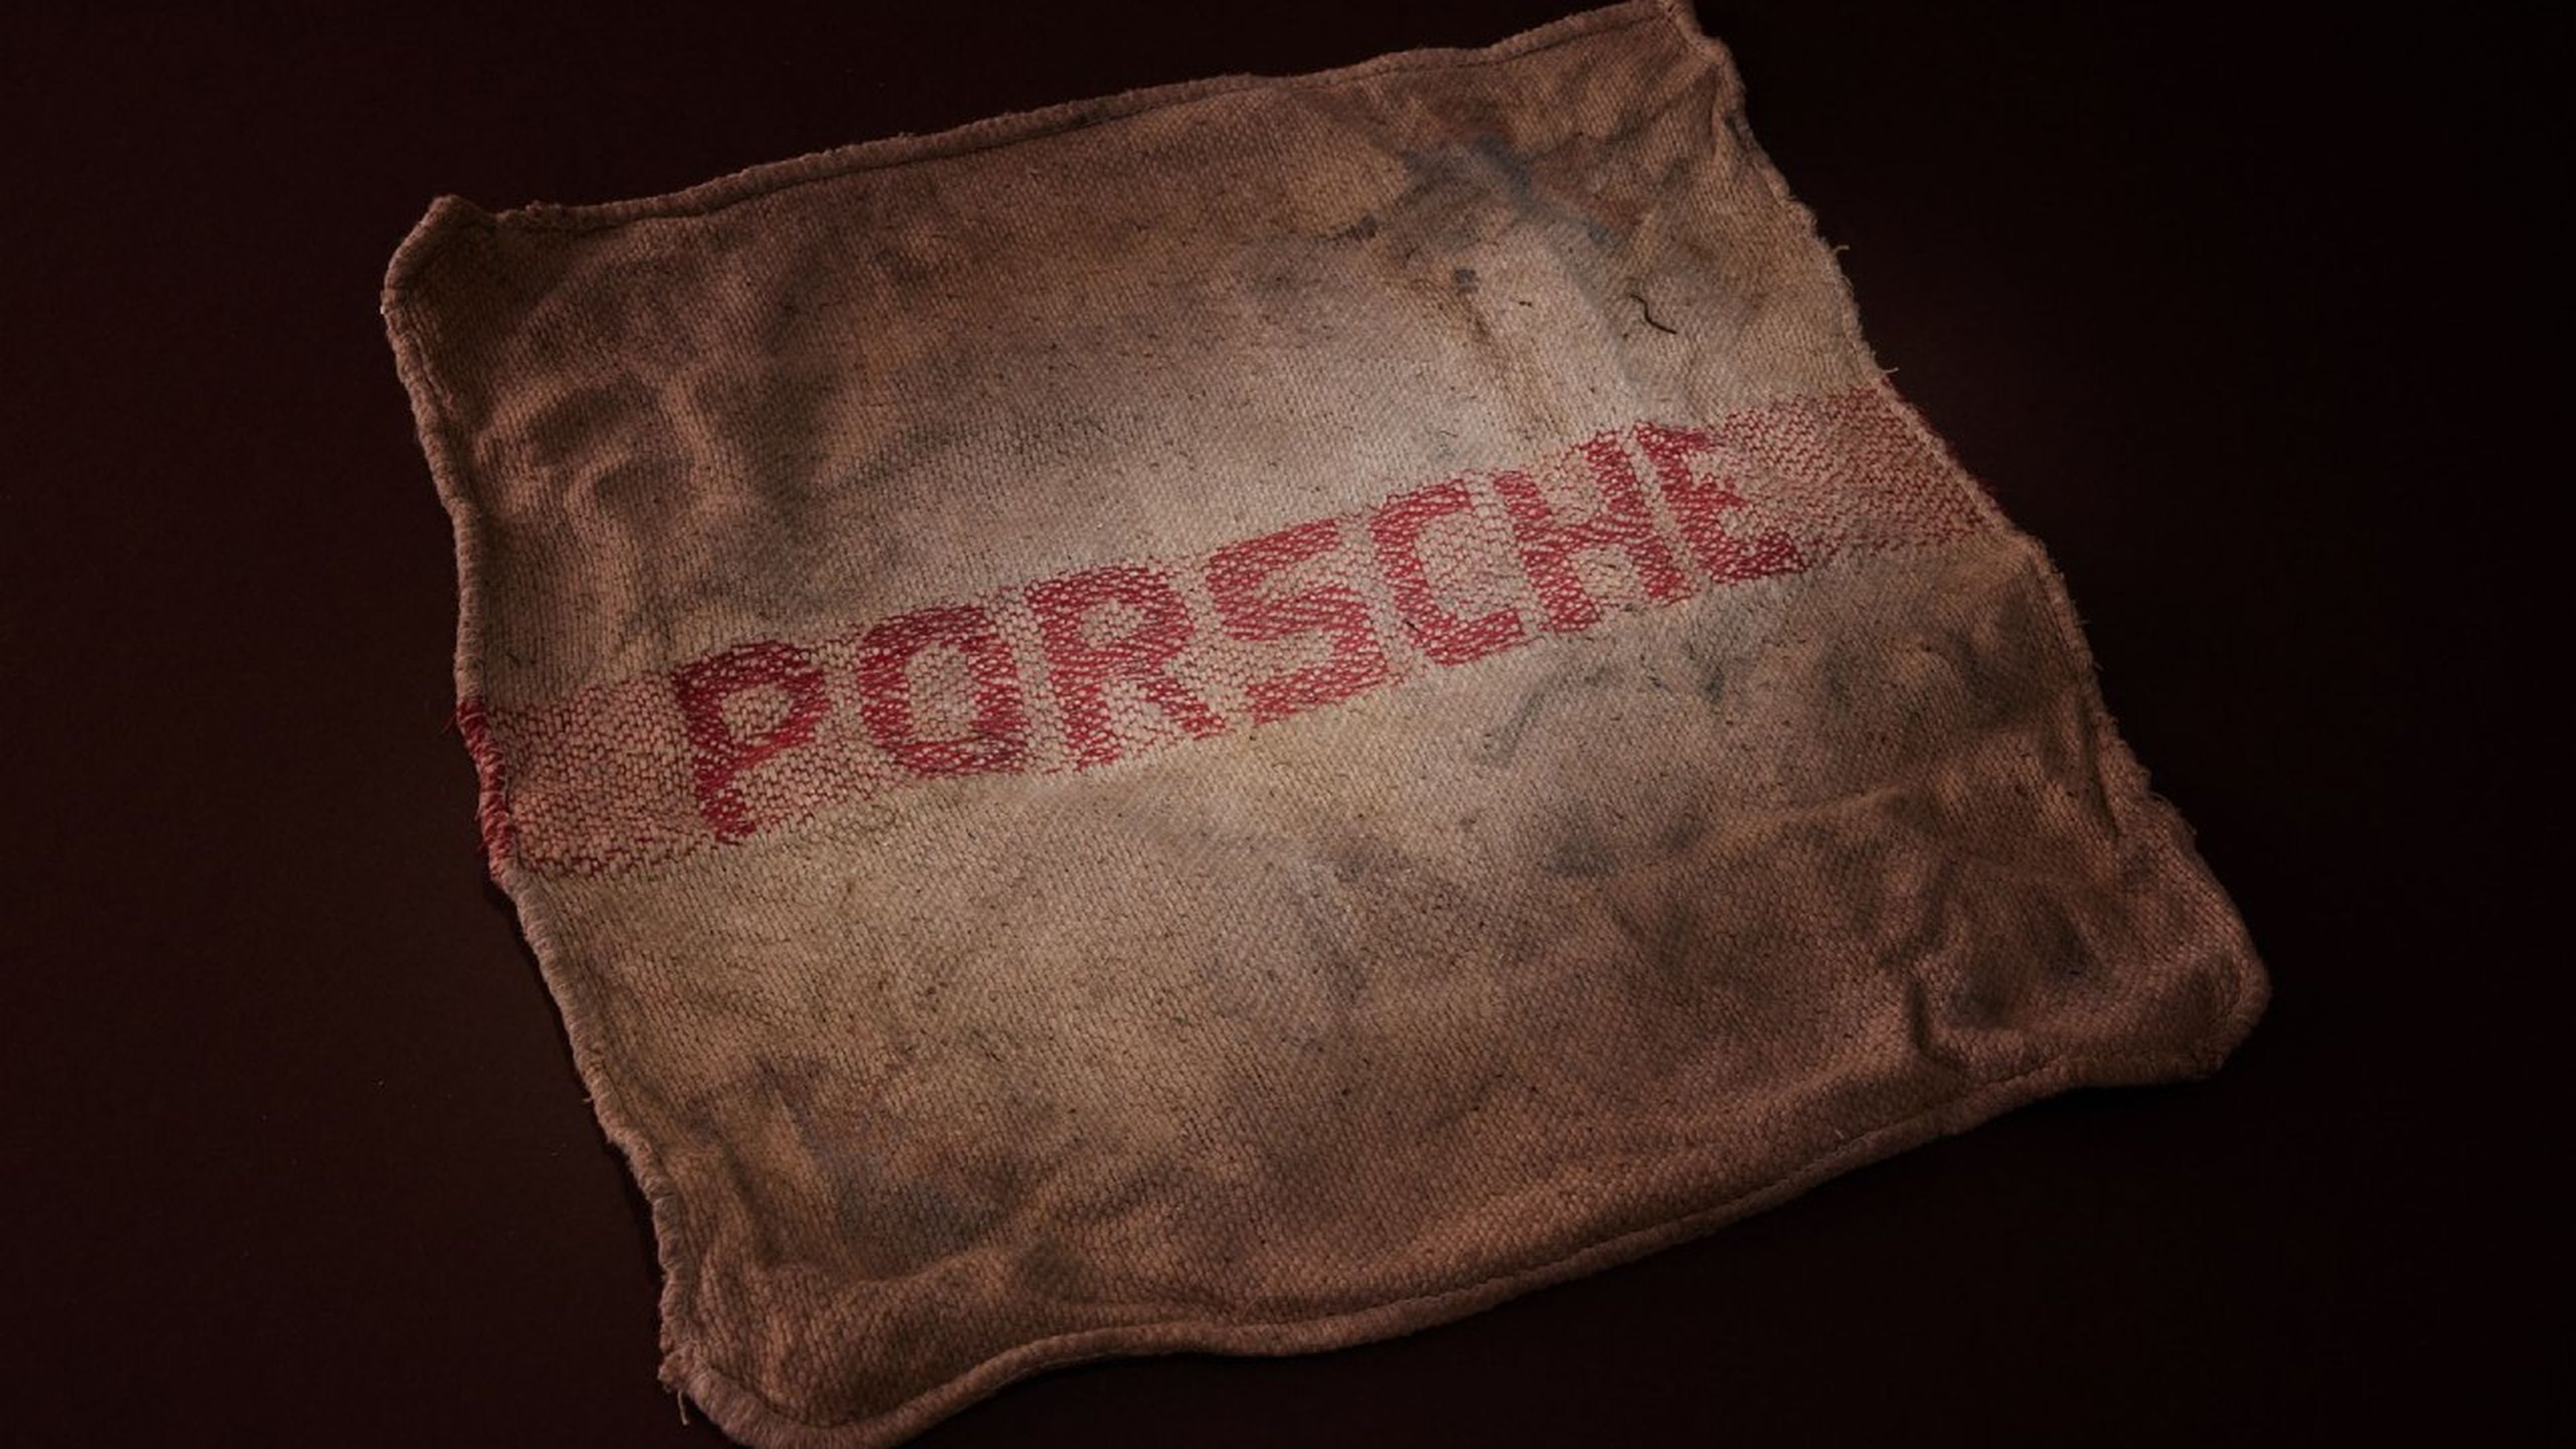 Historia de Porsche y su maletín de cuero